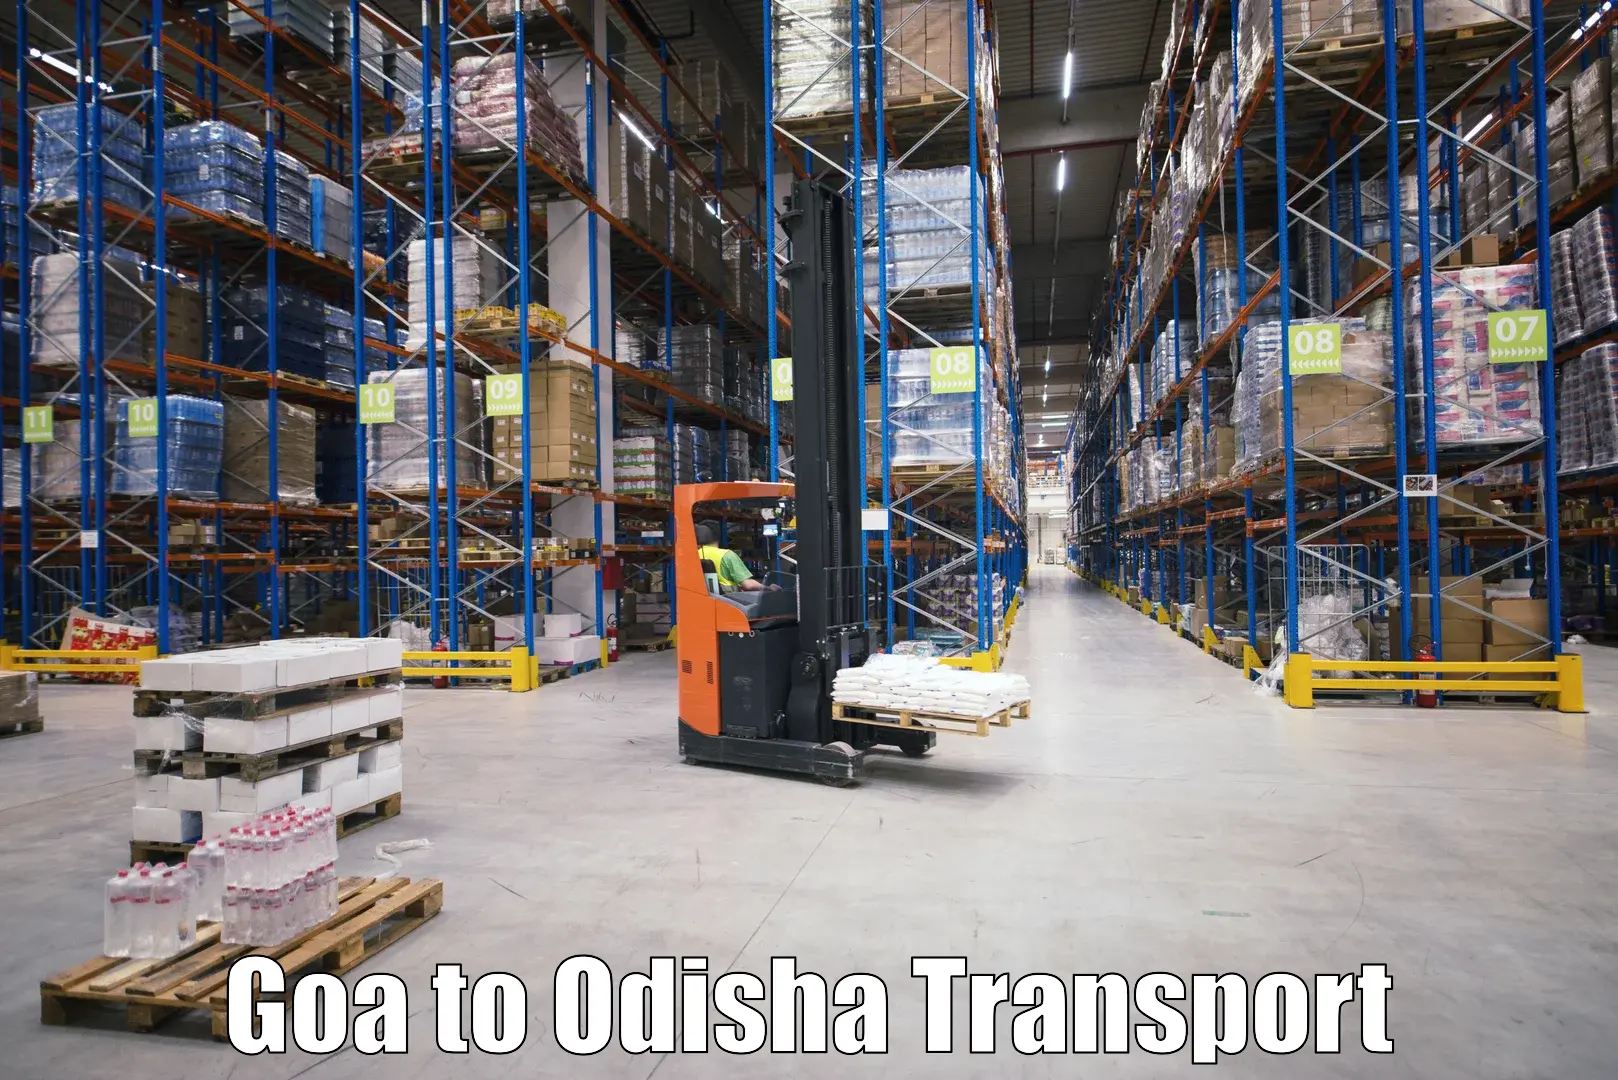 Air cargo transport services Goa to Baisinga